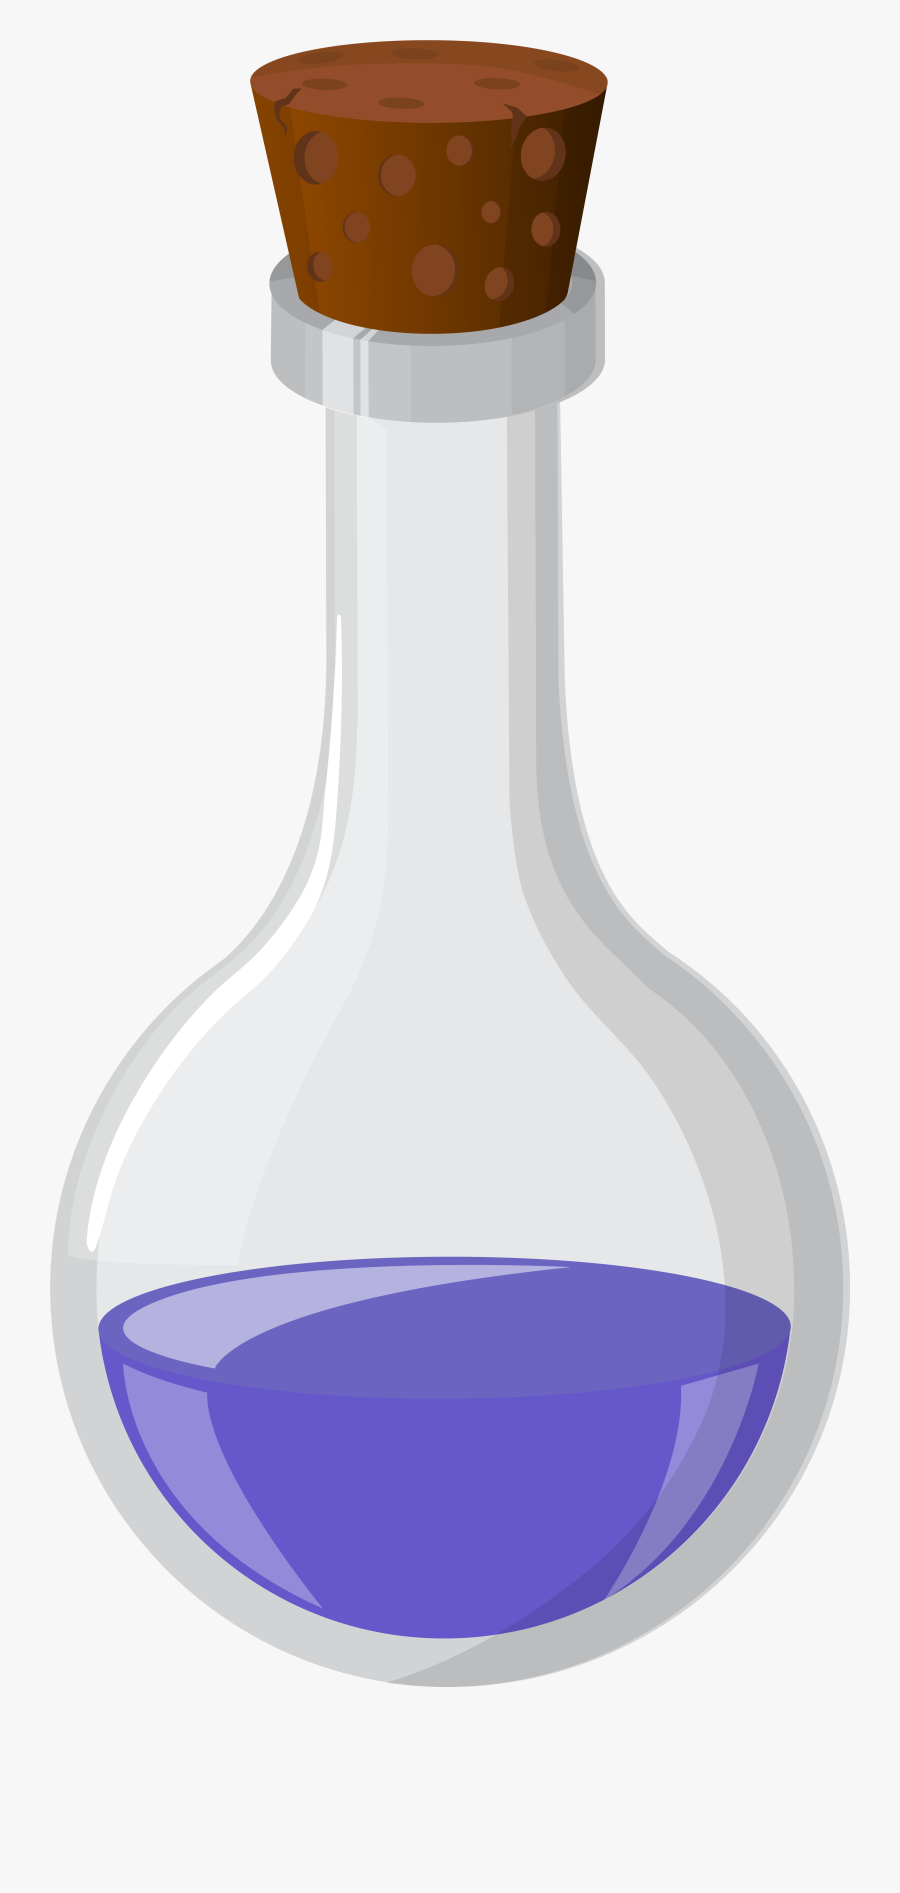 Potion Bottle Clipart Transparent, Transparent Clipart